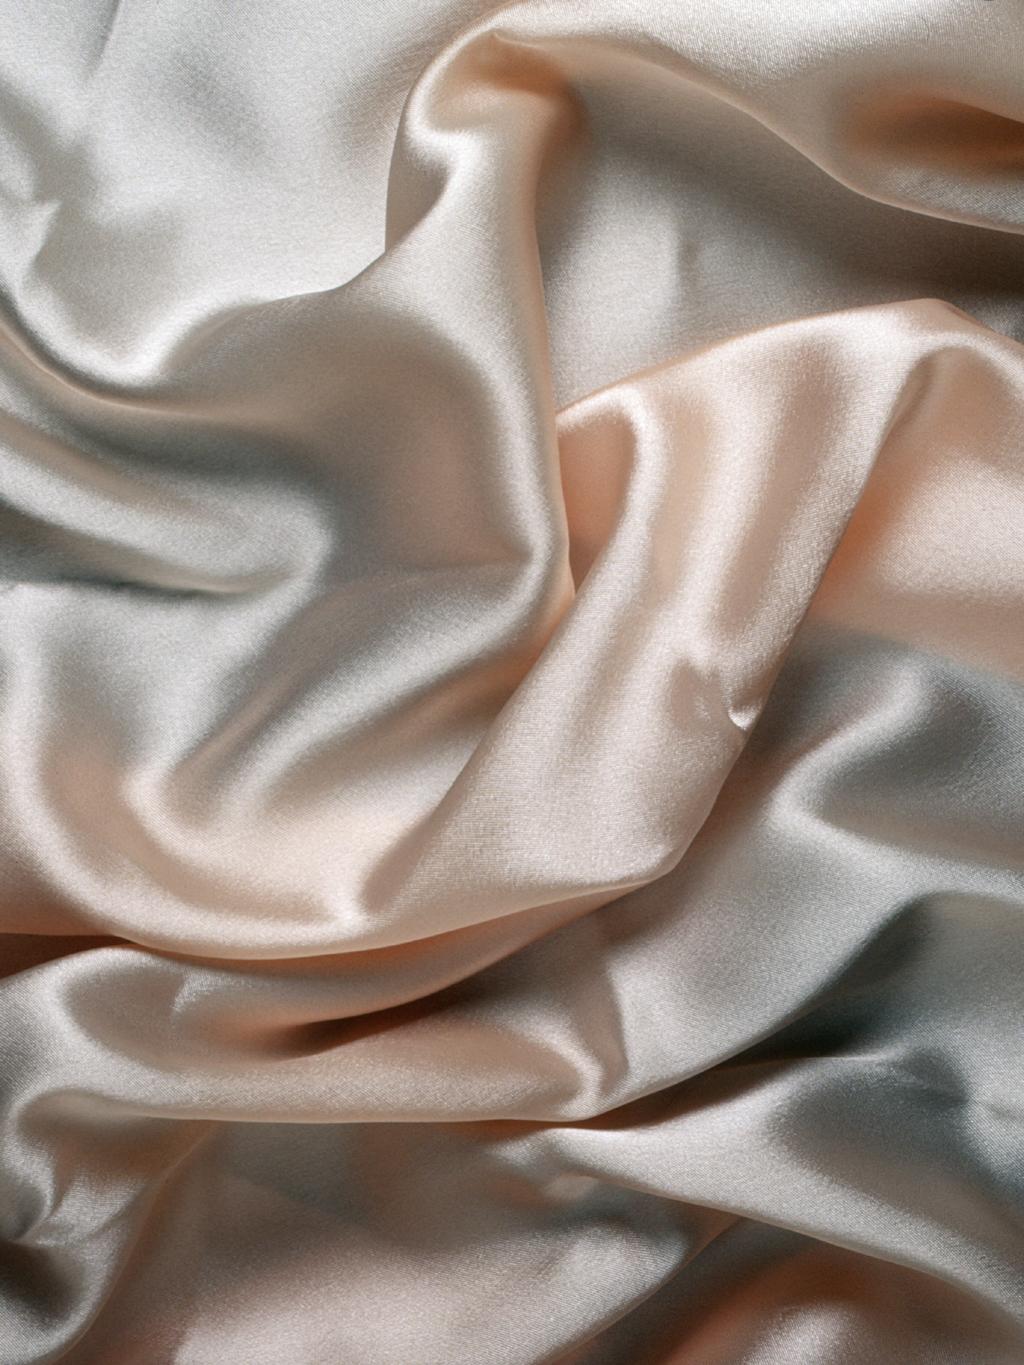 Silk Texture ShareCG